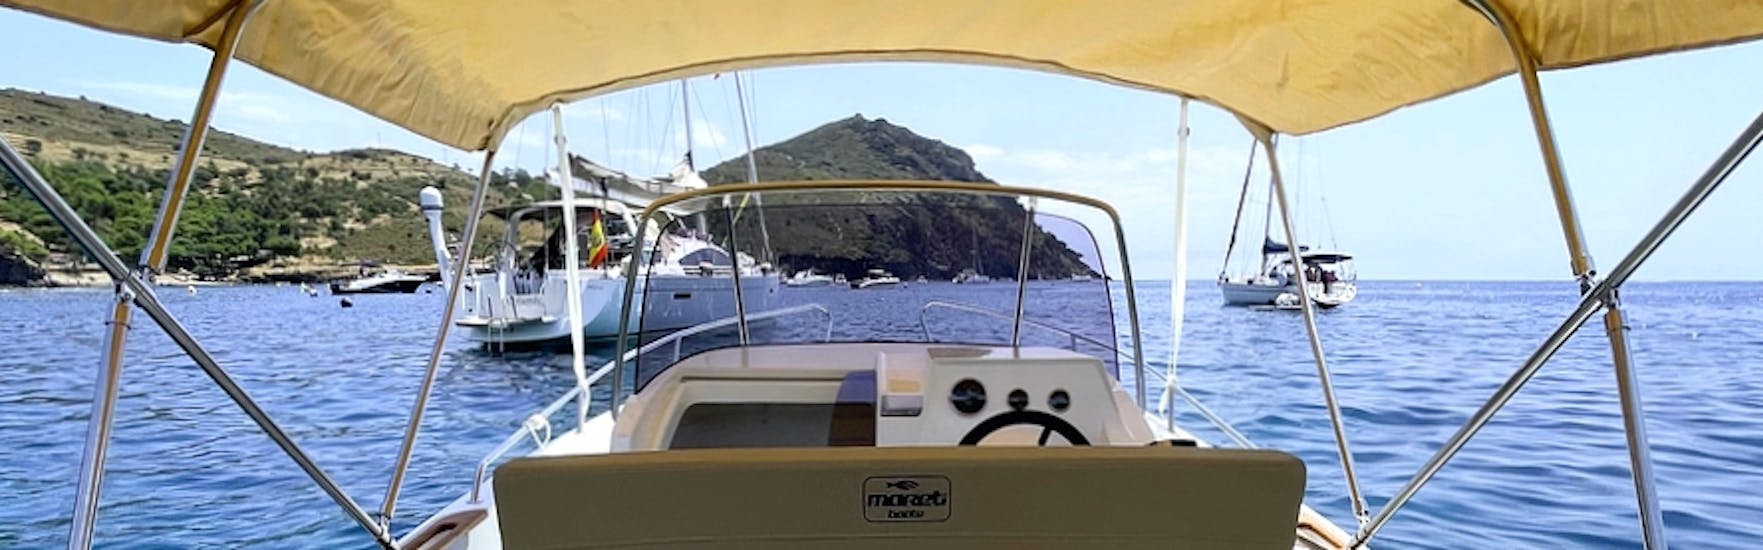 EL moderno barco MARETI 600 OPEN surcando las azules aguas de la bahía de roses durante un alquiler de embarcación en la Costa Brava para hasta 7 personas con licencia con Maxi Boats.